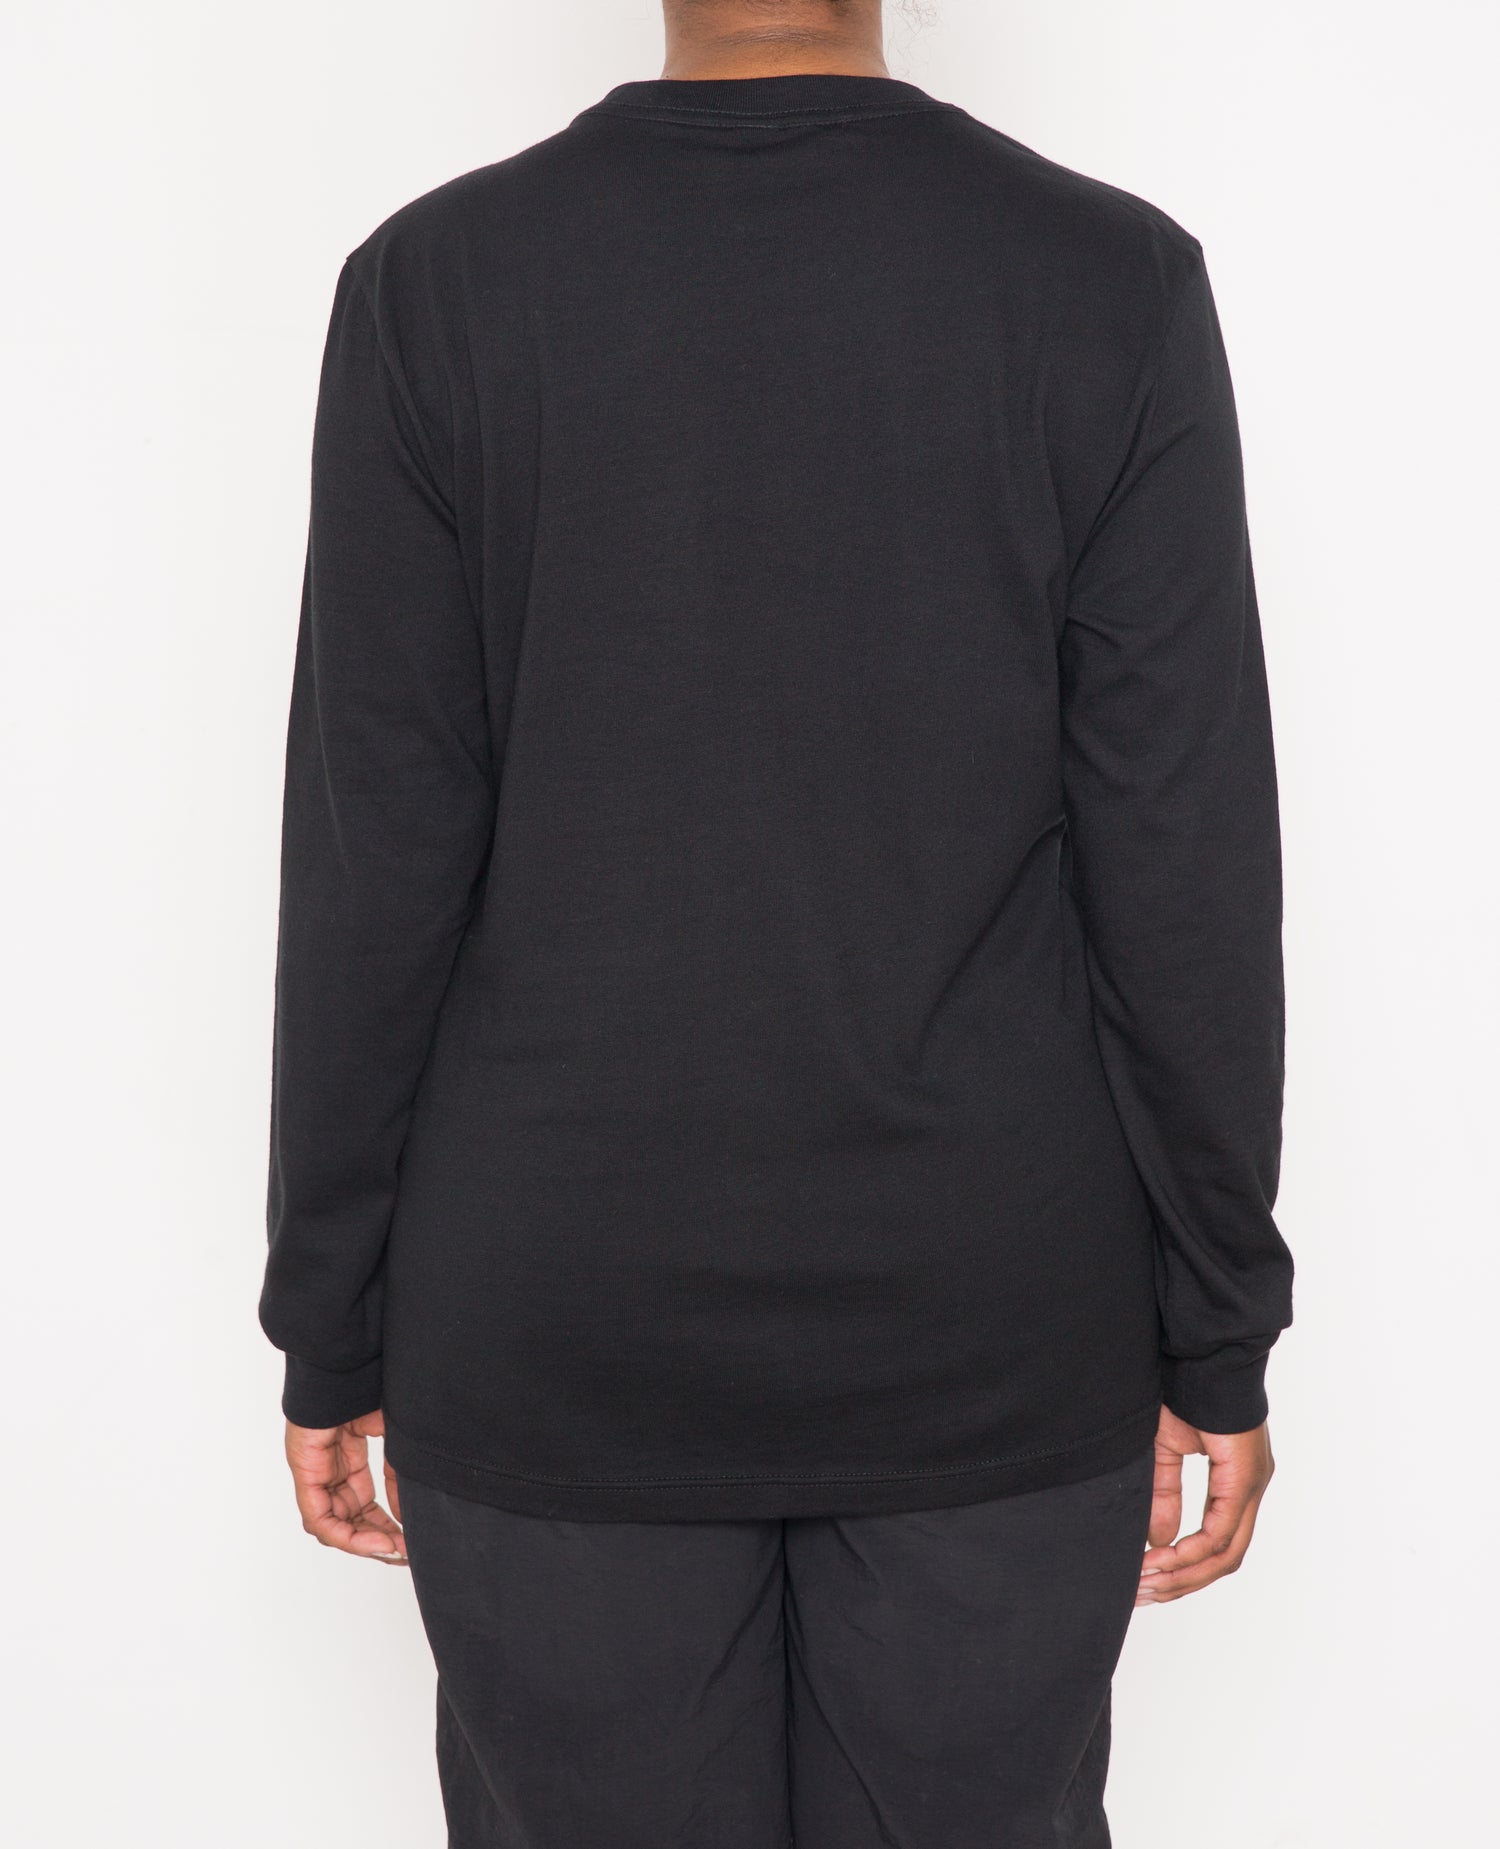 Patta Basic Longsleeve T-Shirt (Black)